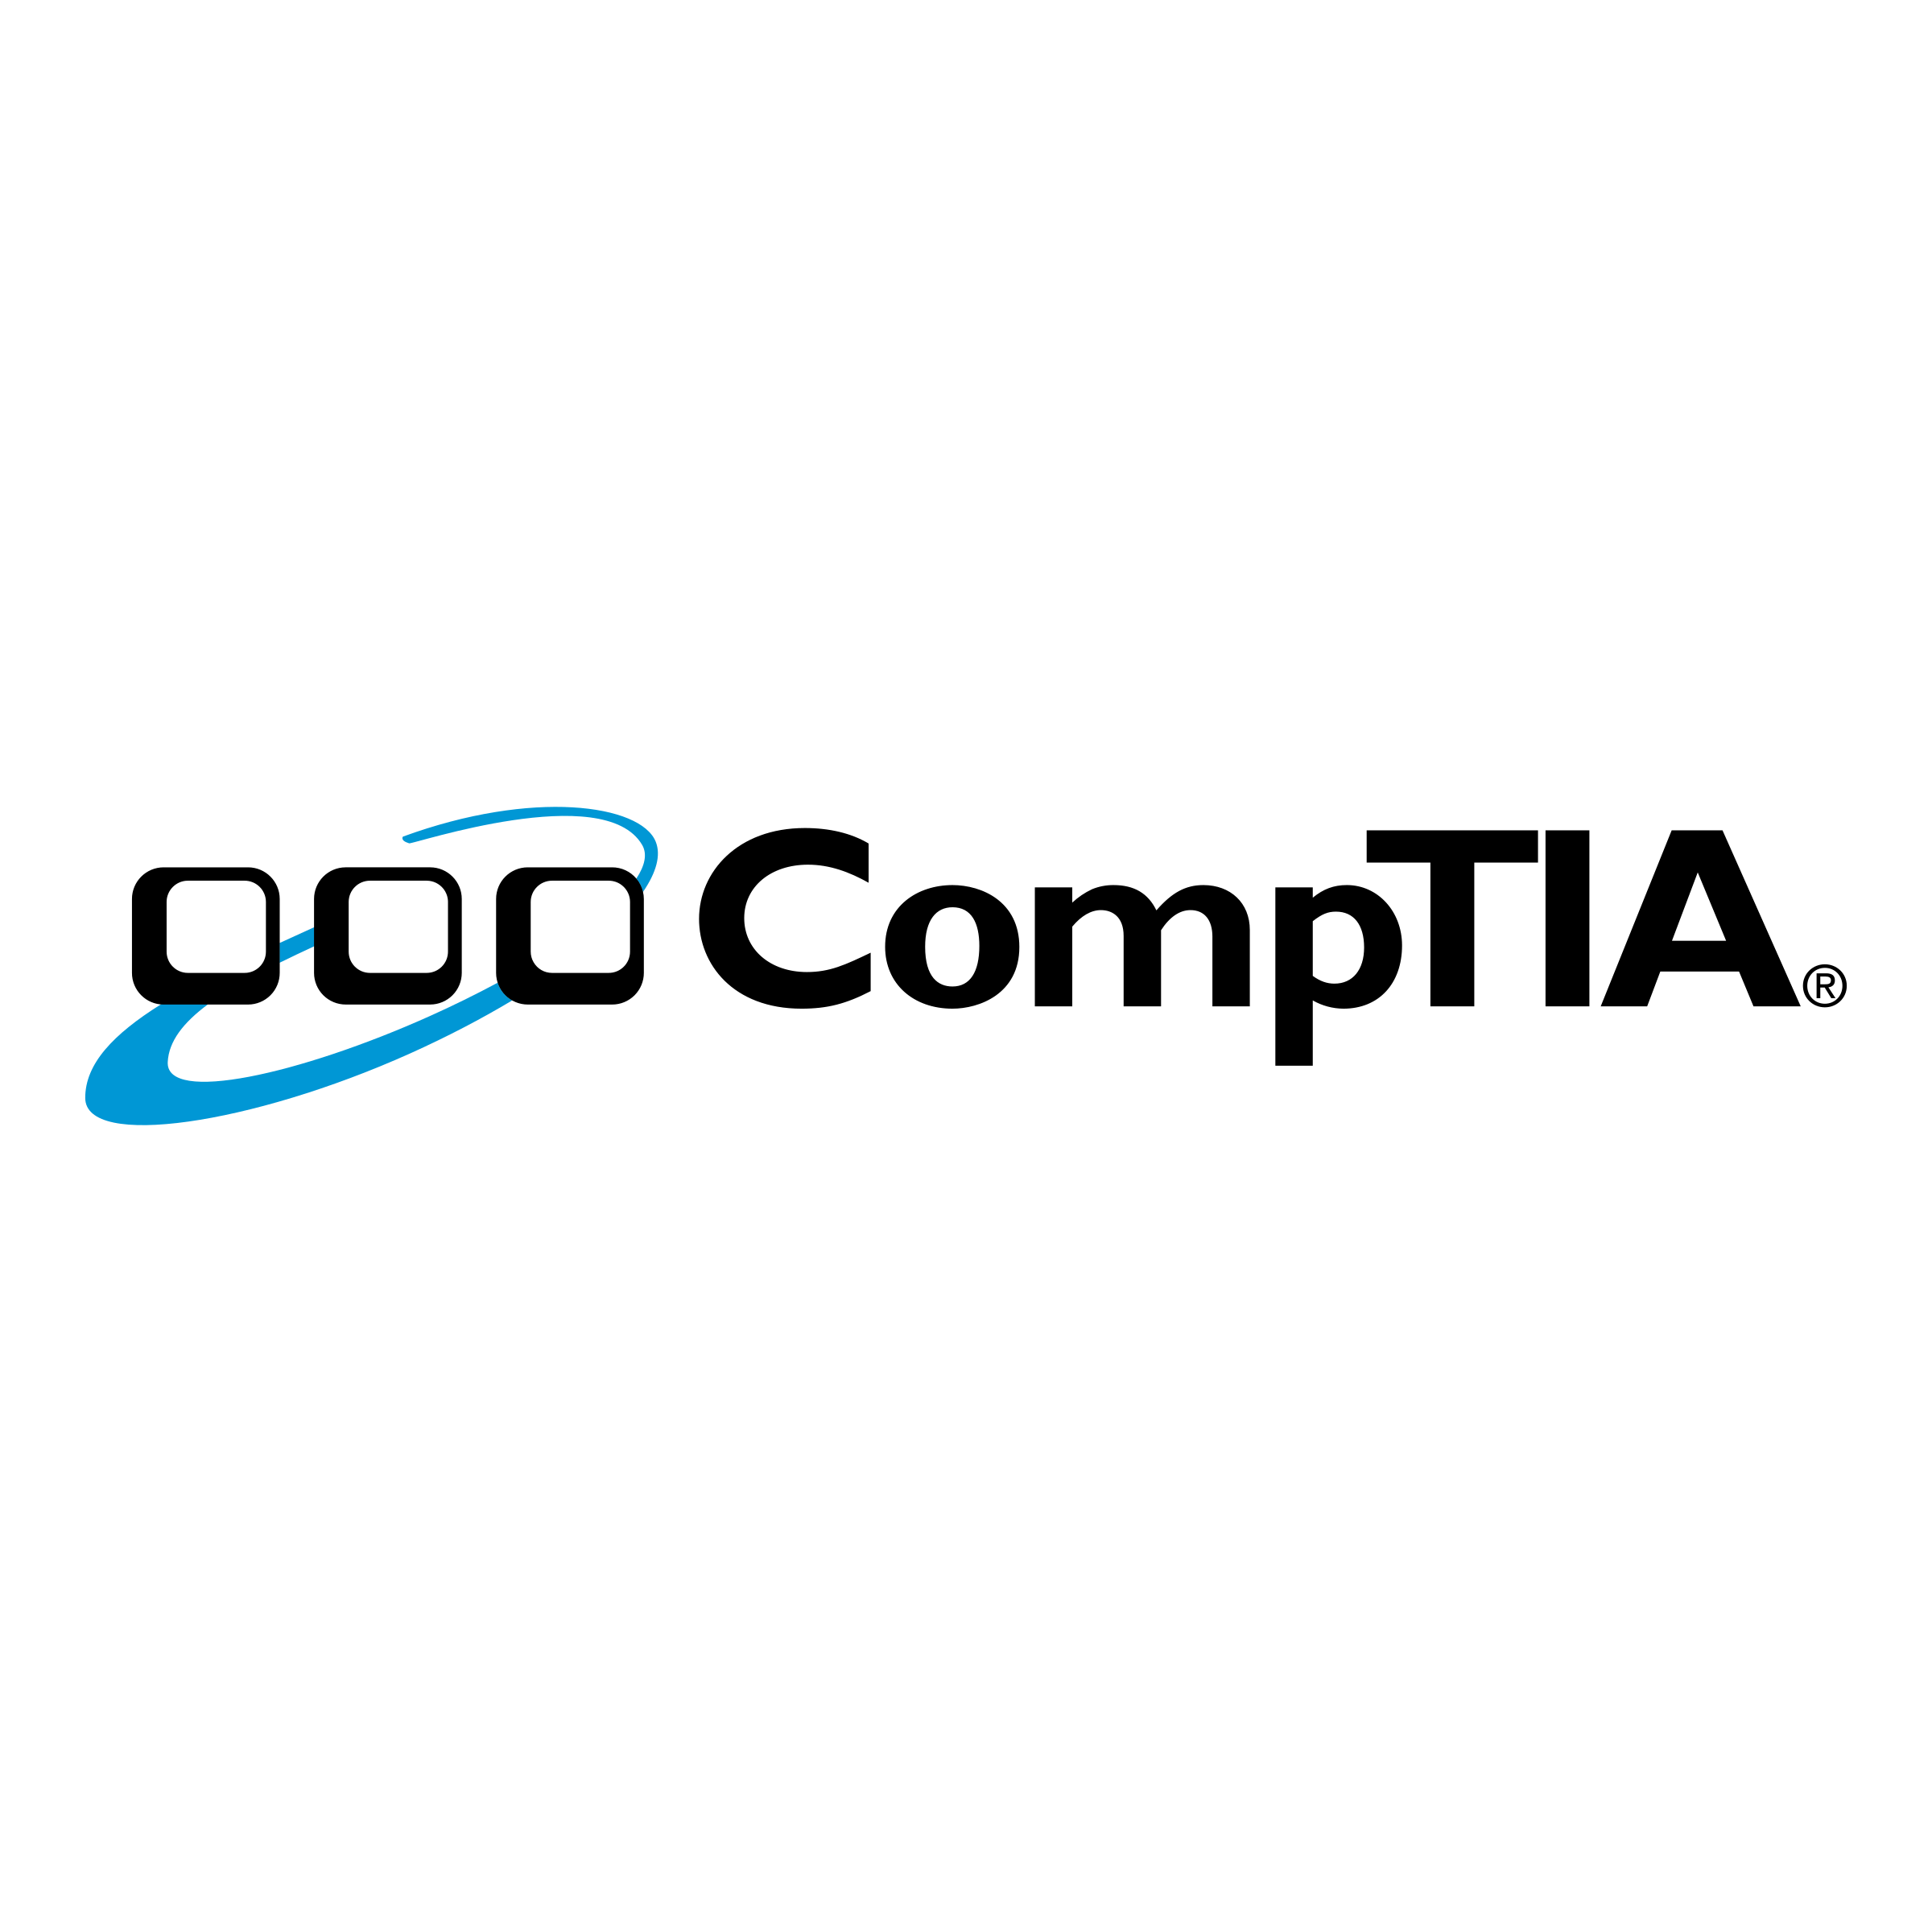 CompTIA Logo - CompTIA Logo PNG Transparent & SVG Vector